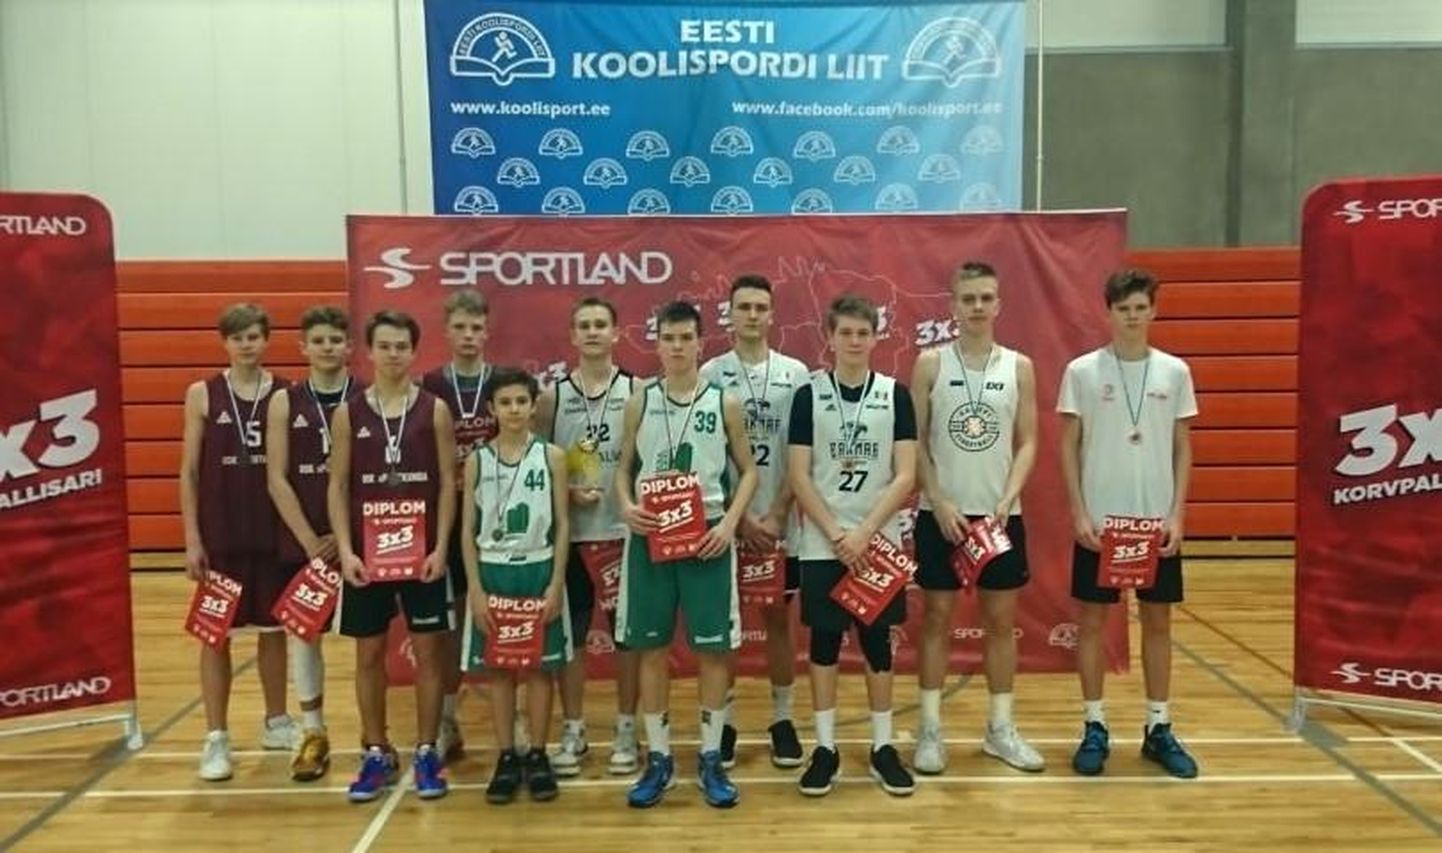 Kunda ühisgümnaasiumi poisid (vasakul punases) mängisid tihedas konkurentsis end Eesti Koolispordi Liidu 3x3-korvpalli festivalil põhikooli vanuseastmes teisele kohale.